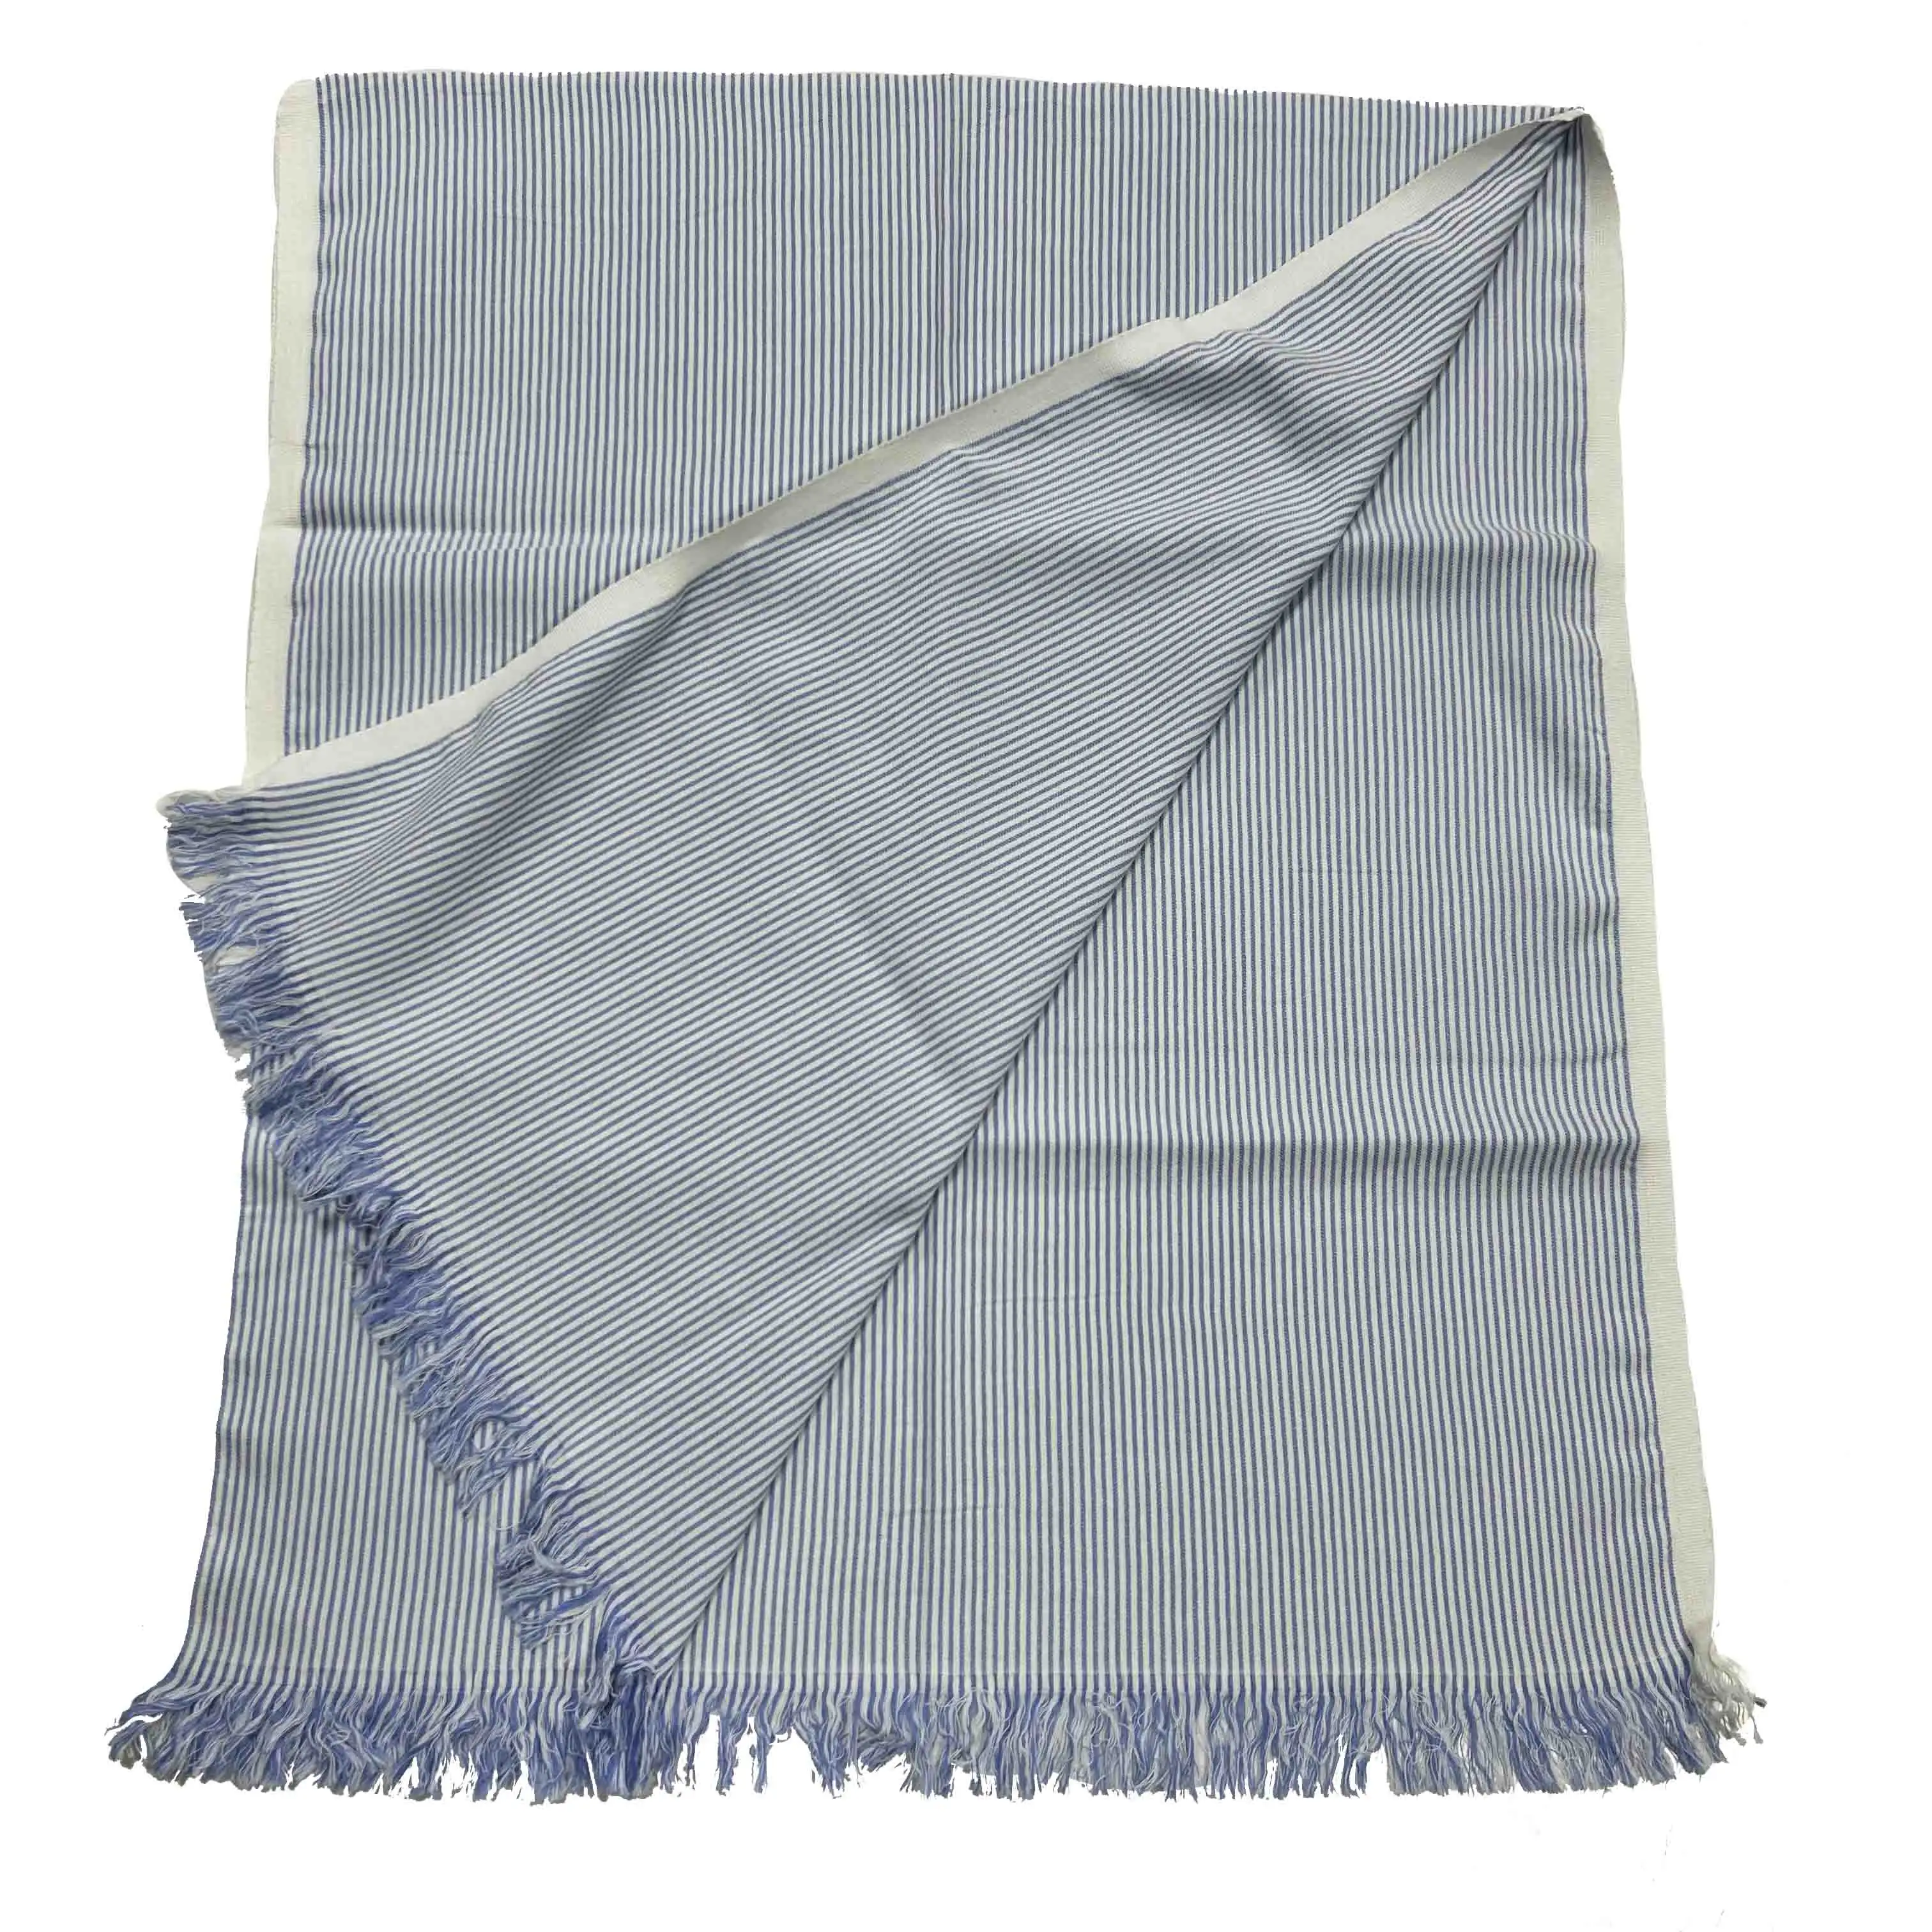 Neues Design 100 % Baumwolle lange Schals Farbfärbung Gewebte Baumwolle Damen große Schals